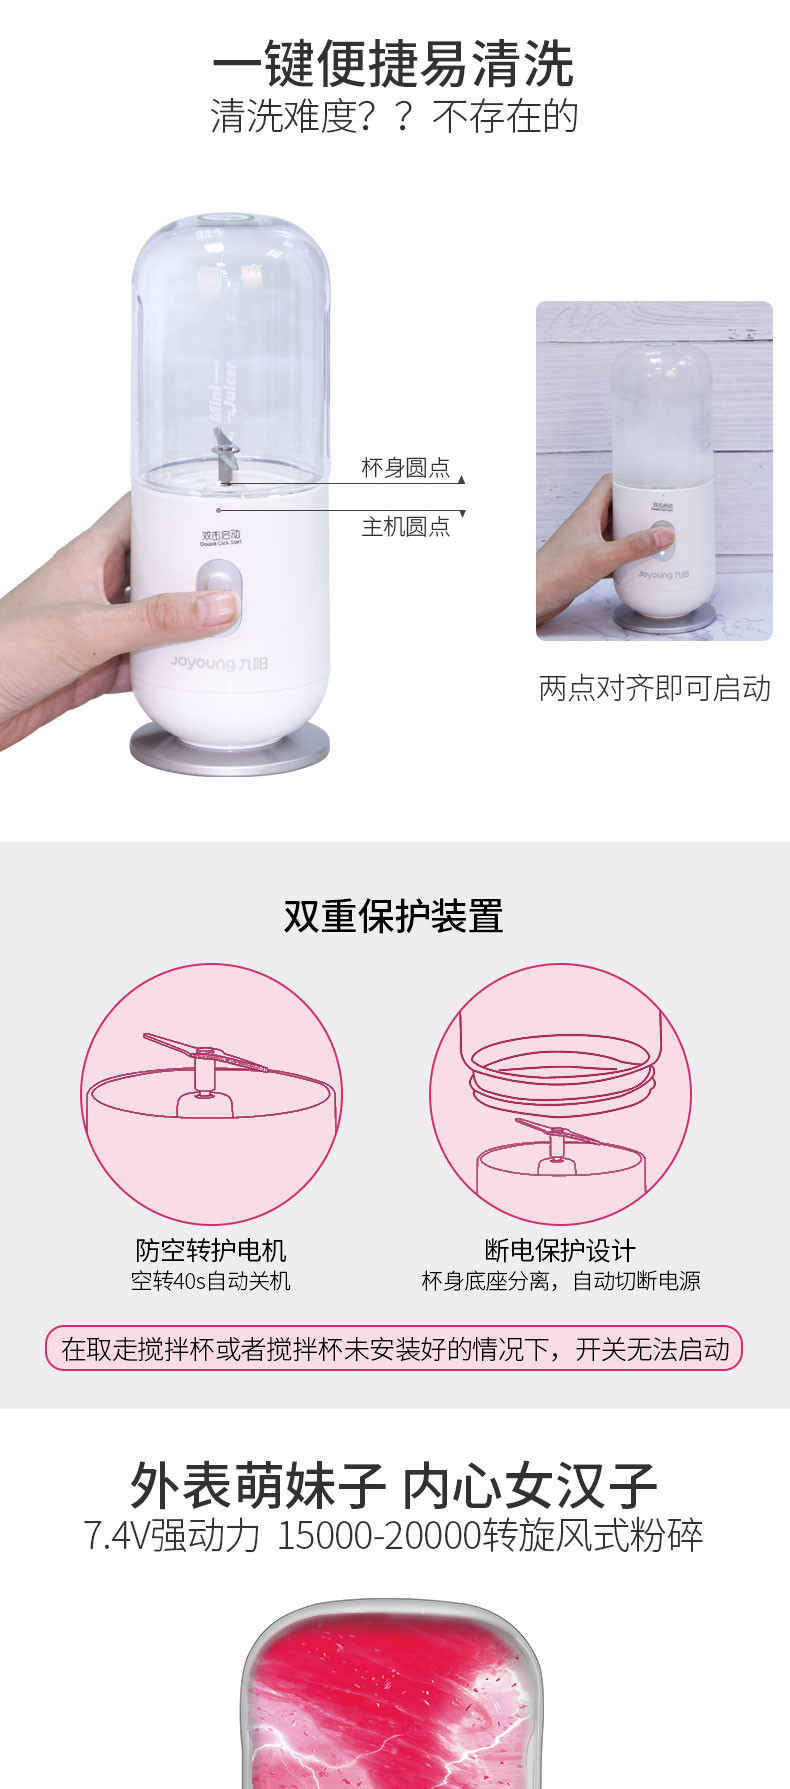 九阳（Joyoung）便携式充电果汁机迷你榨汁杯JYL-C902D白色